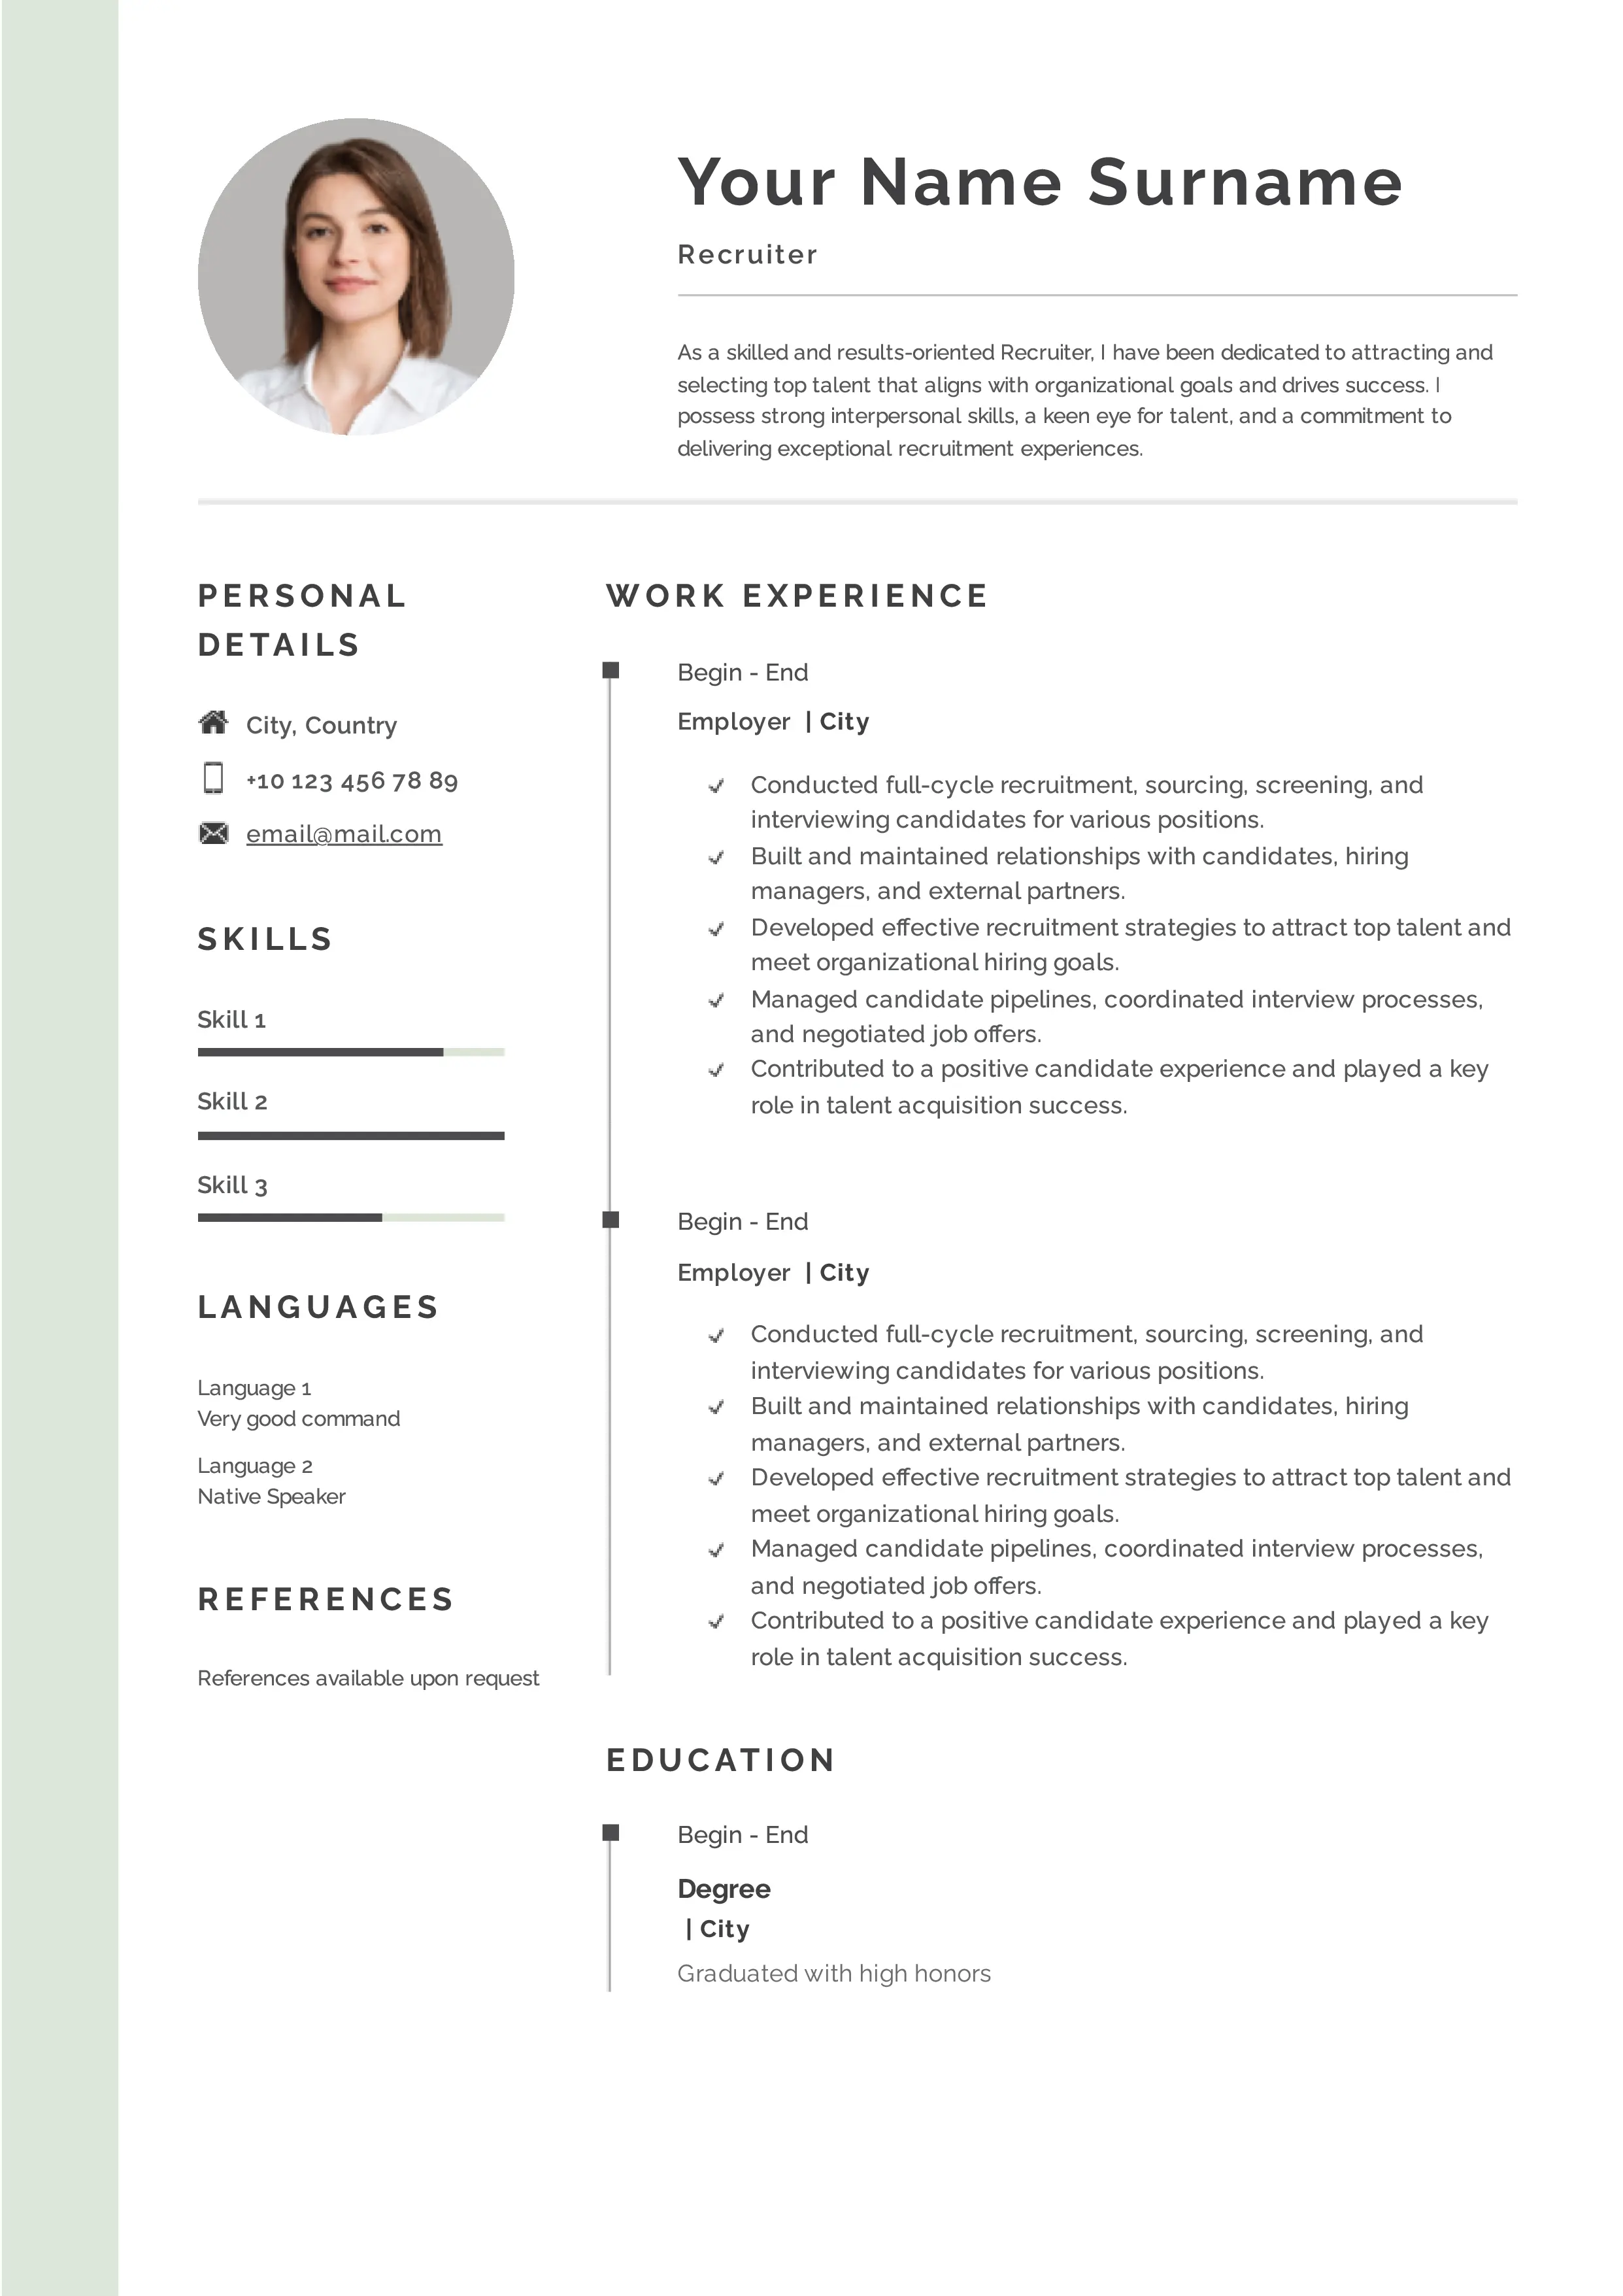 Recruiter resume CV